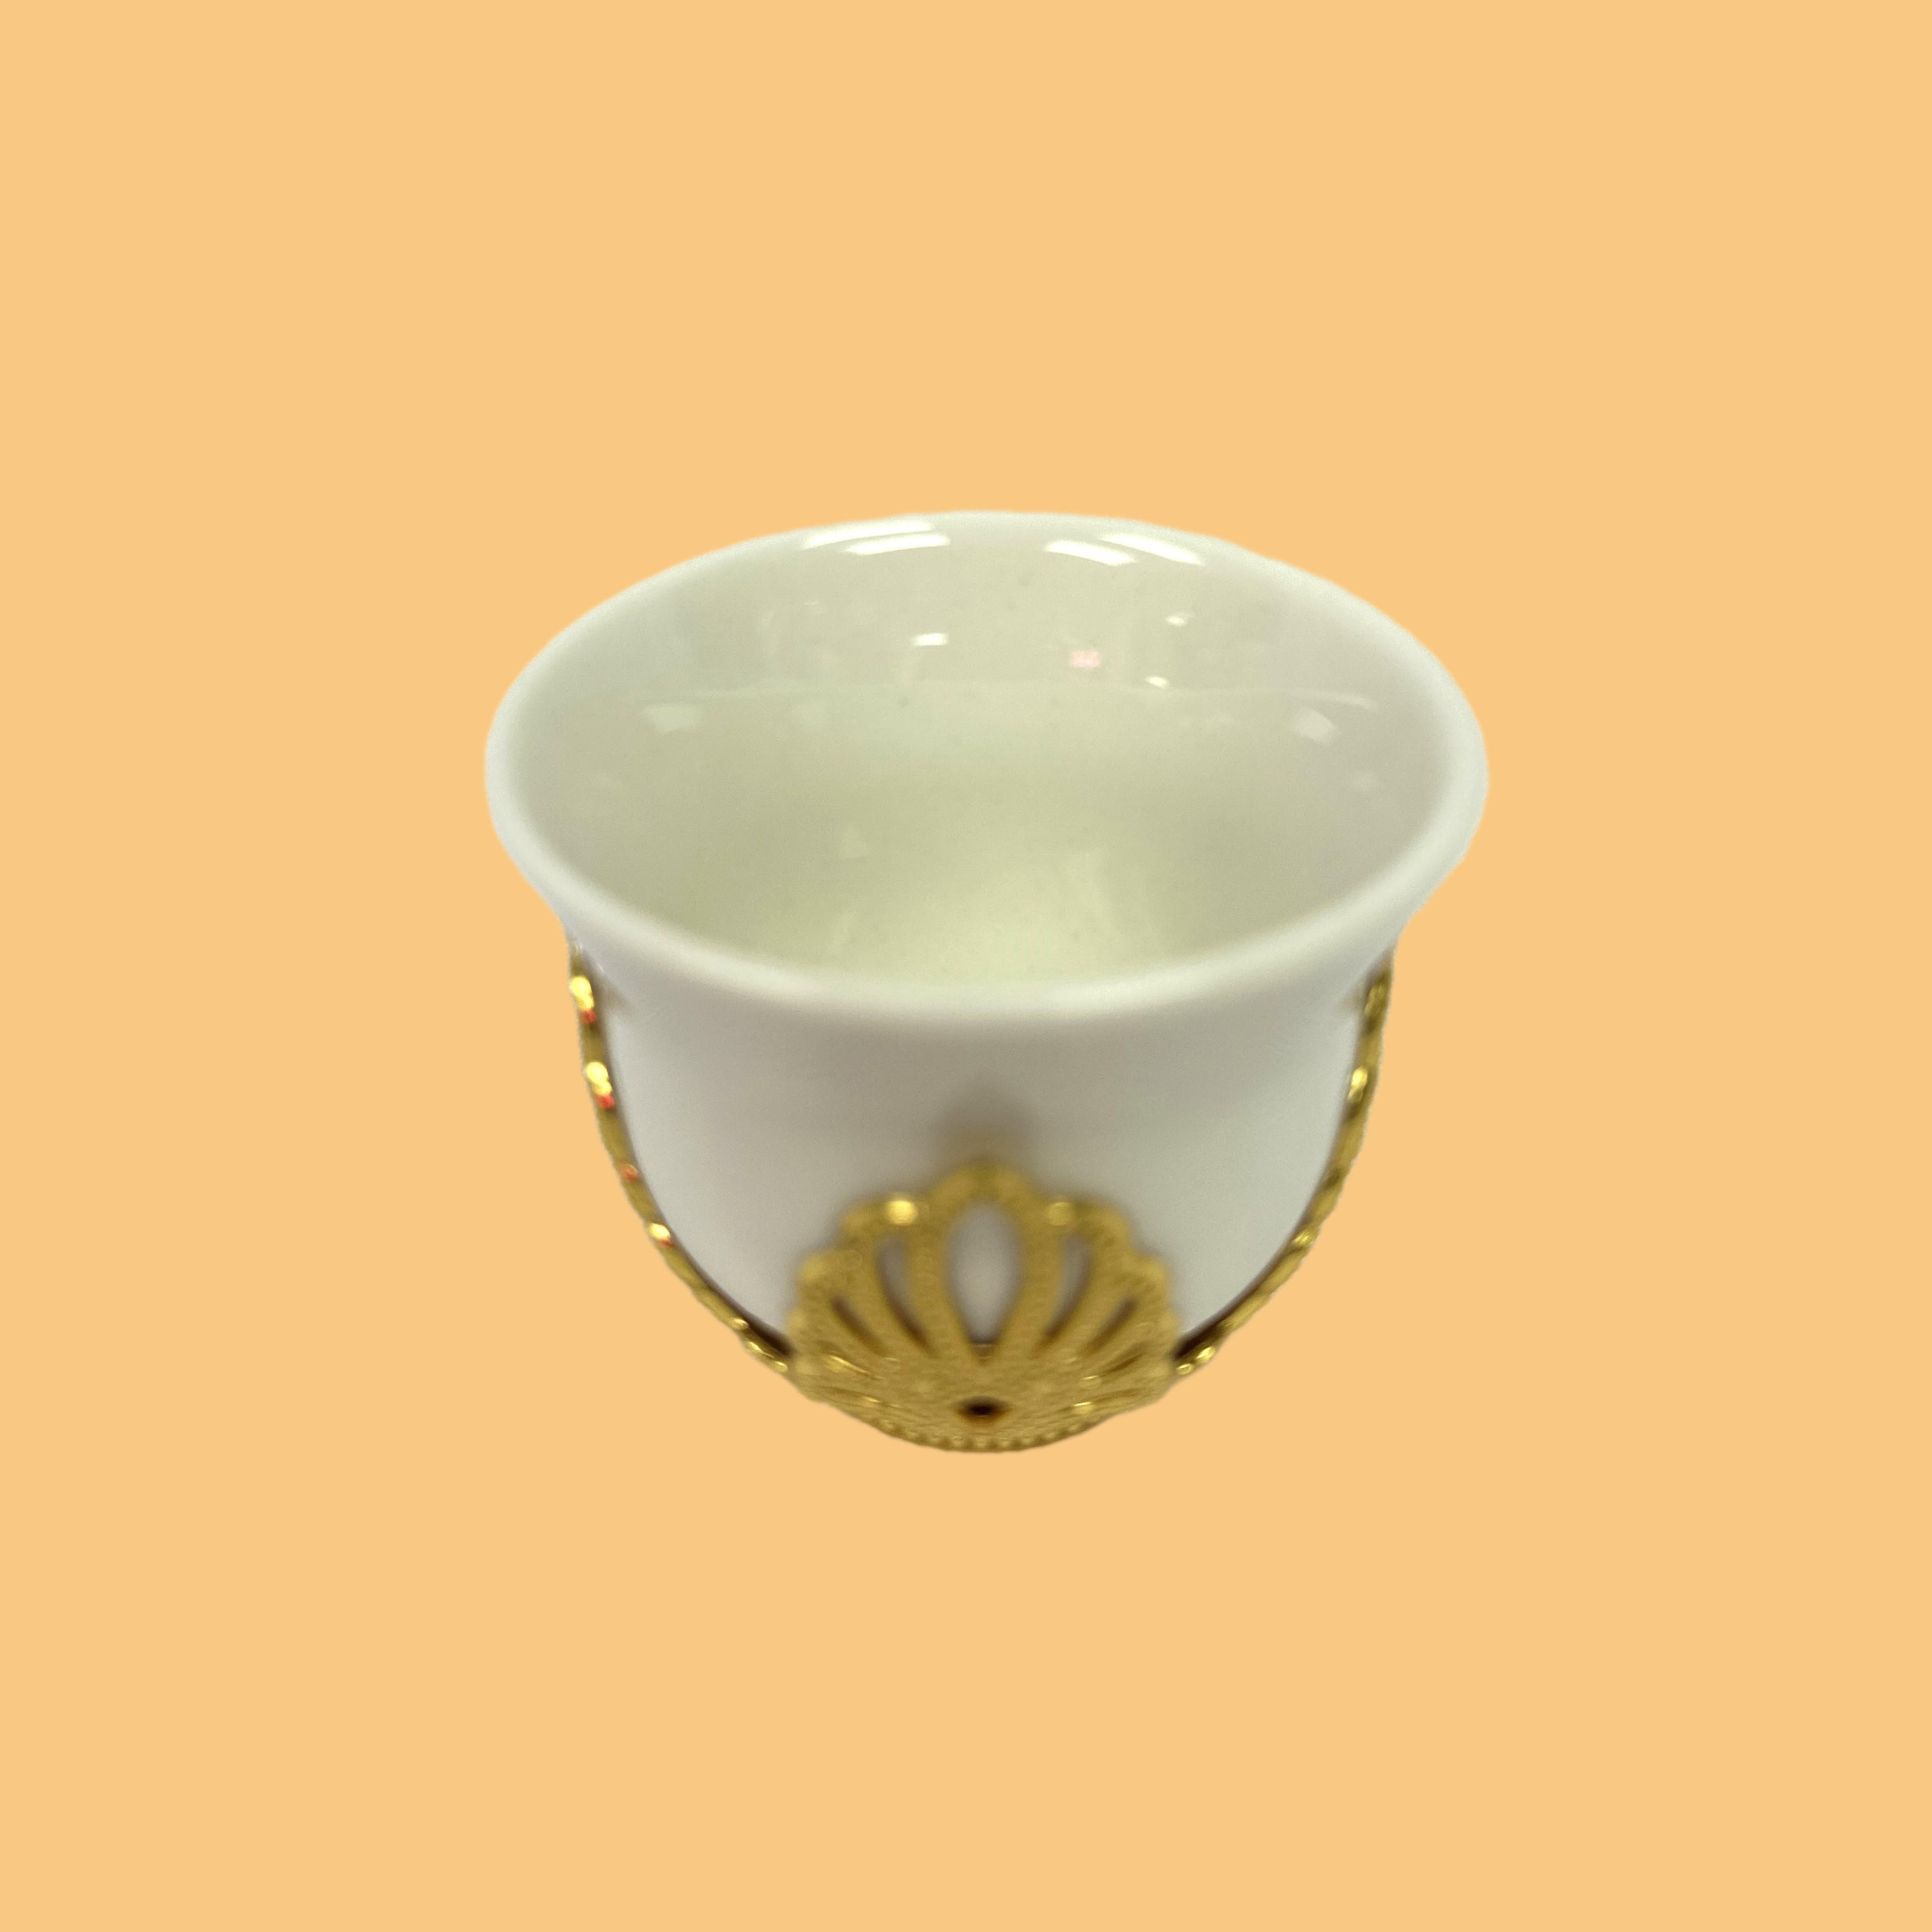 Glass Arabic coffee cup